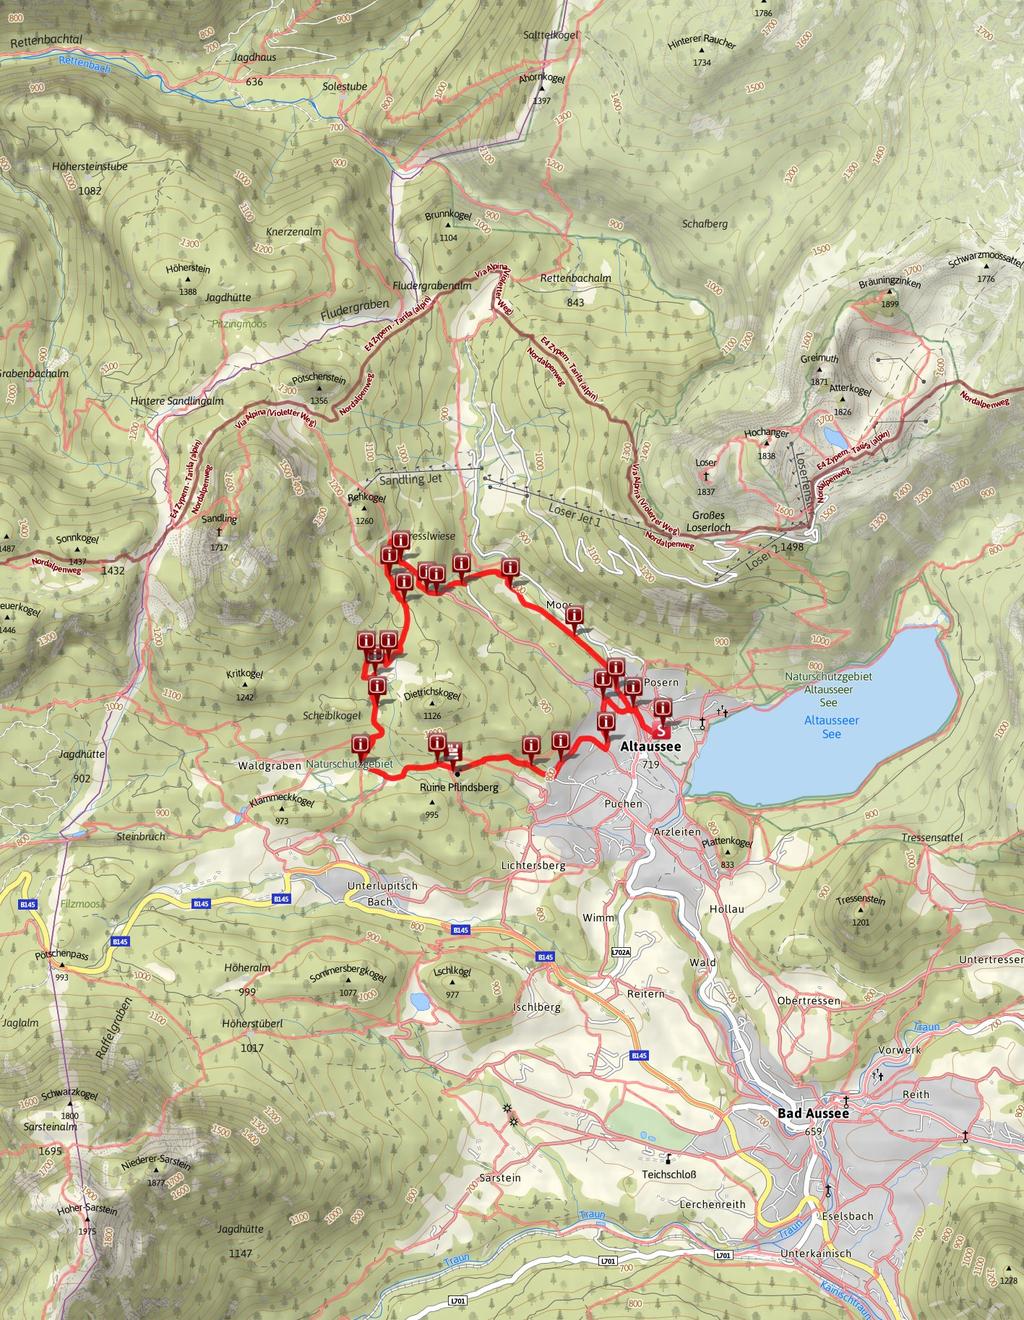 9,8 km 3:30 Std. 380 m 380 m Schwierigkeit mittel Kartengrundlagen: outdooractive Kartografie; Deutschland: GeoBasis-DE / BKG 2017, GeoBasis-DE / GEObasis.nrw 2011, Österreich: 1996-2017 here.